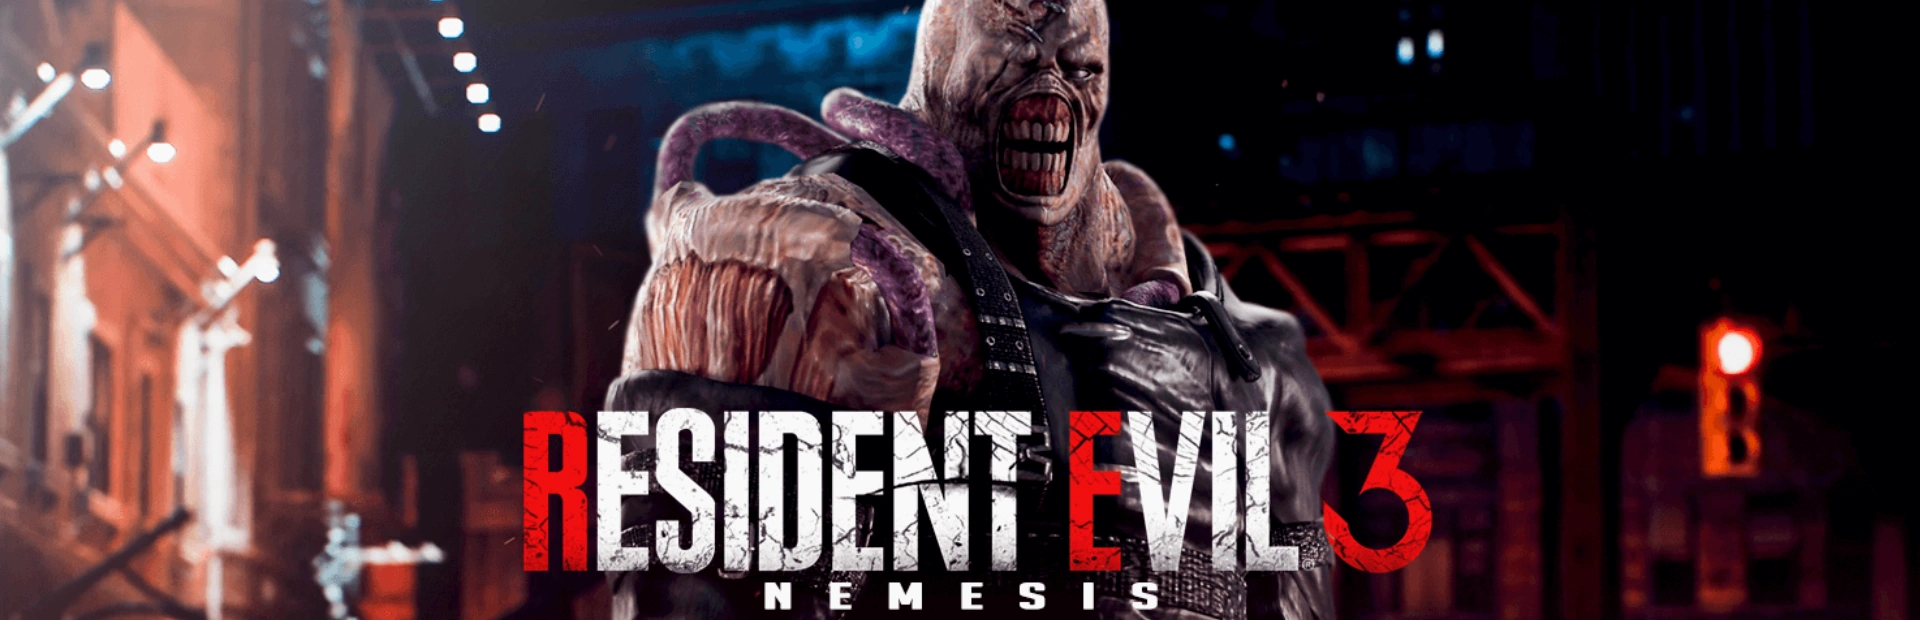 Resident Evil 3.banner1